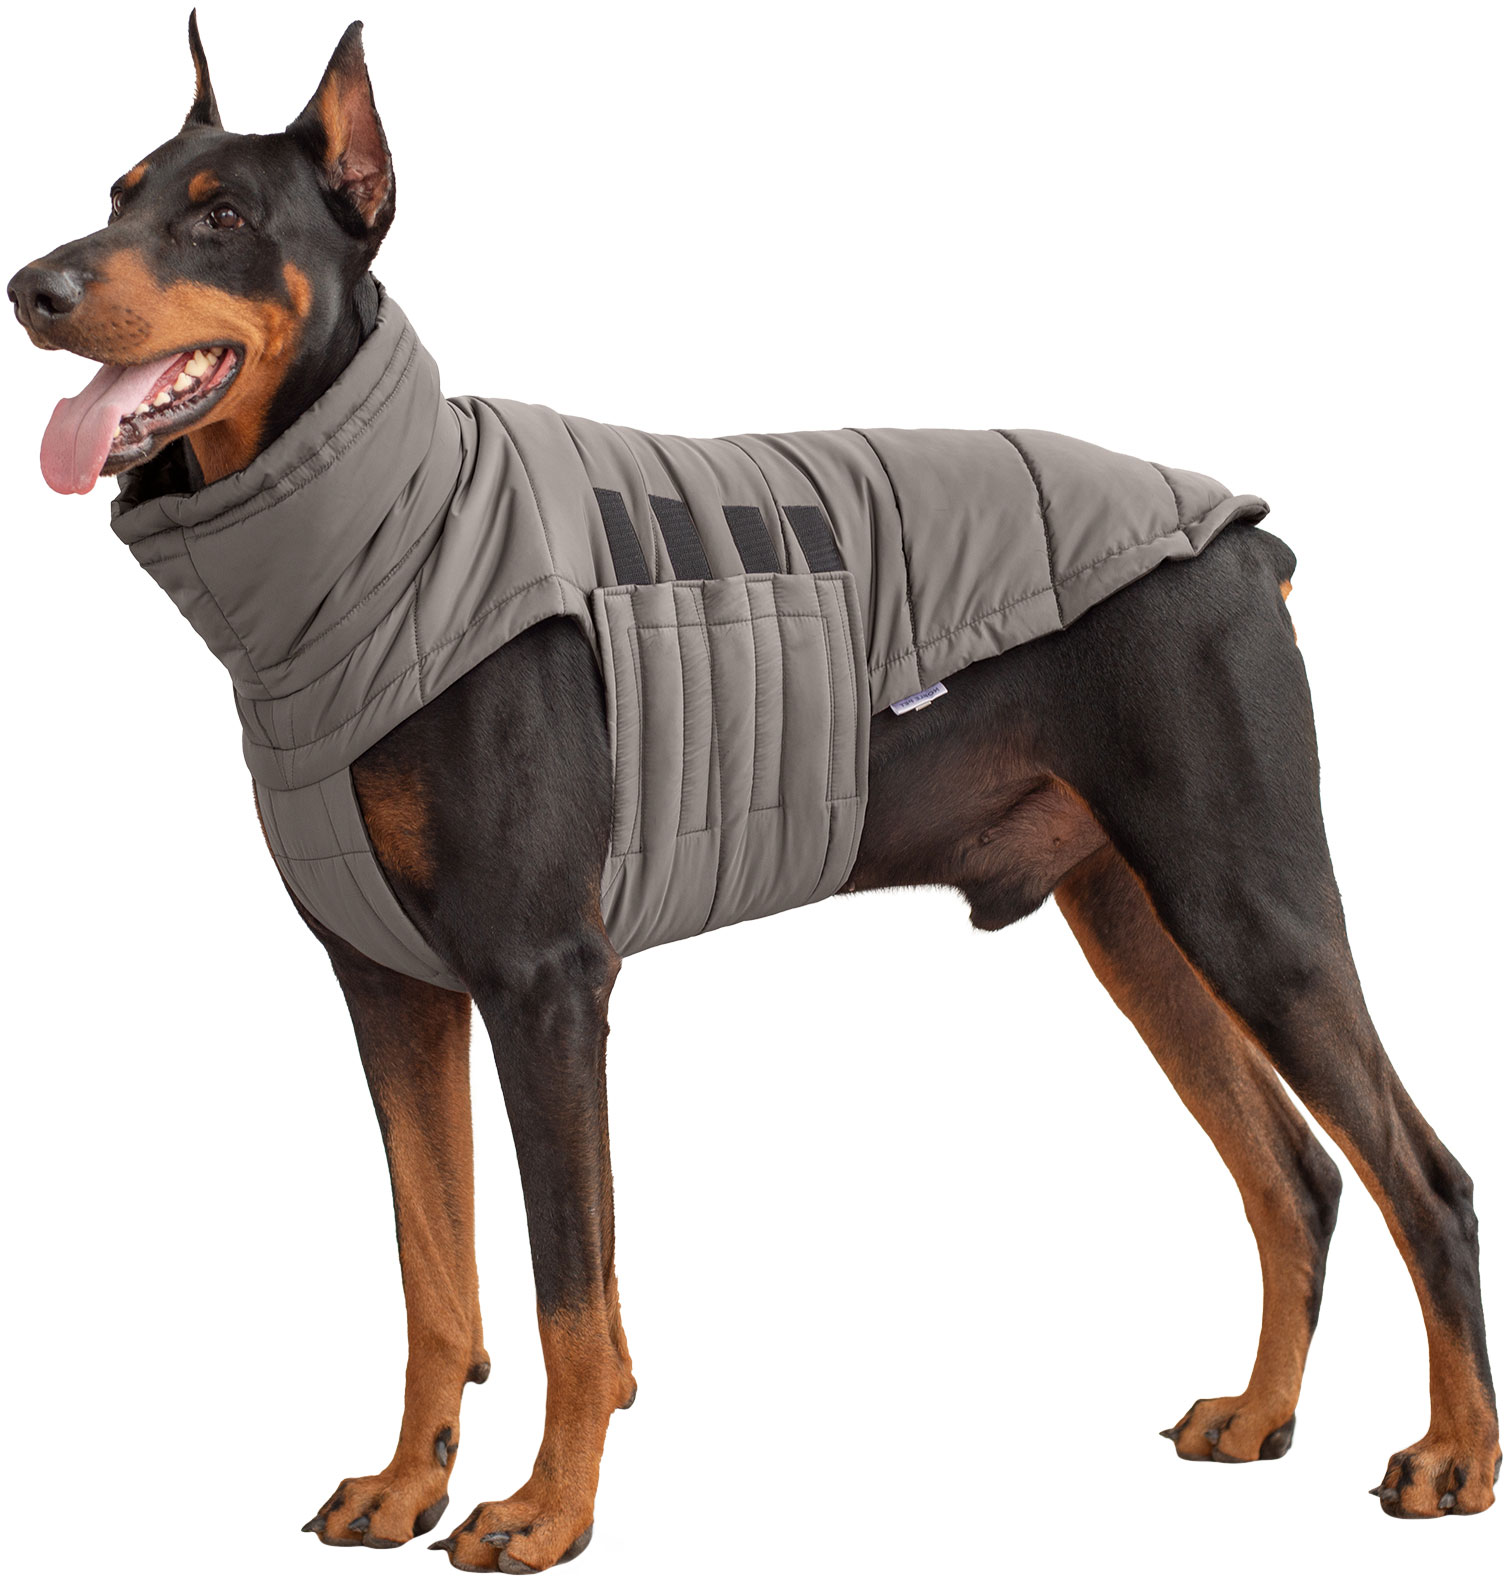 Одежда для собак без шитья